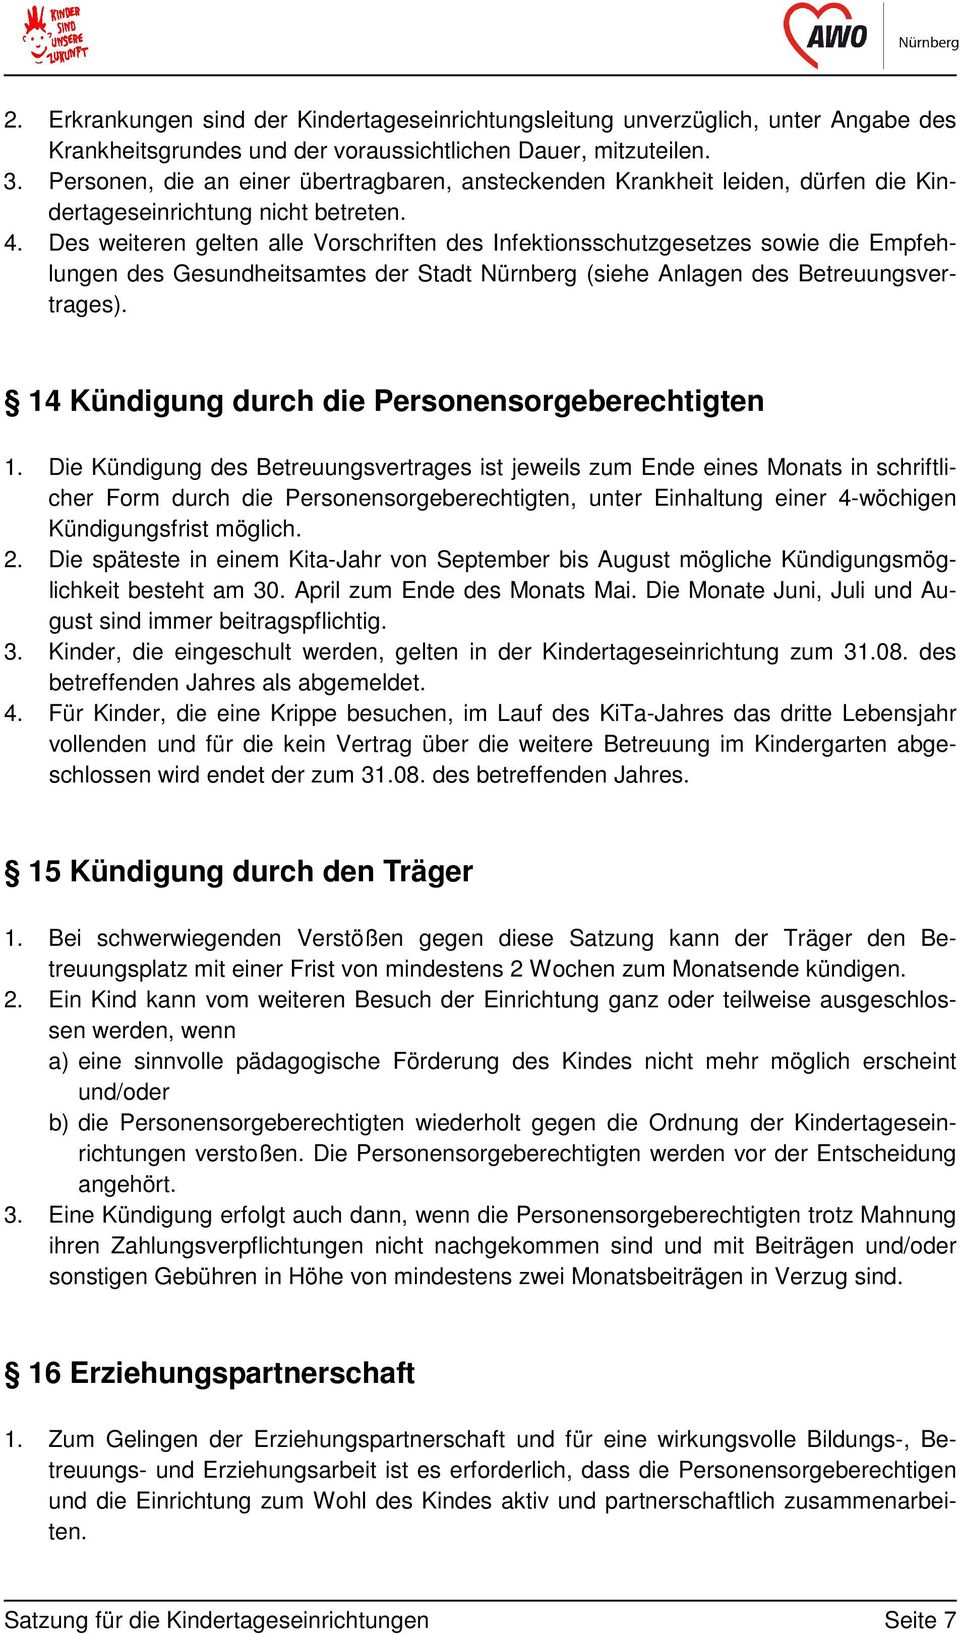 Des weiteren gelten alle Vorschriften des Infektionsschutzgesetzes sowie die Empfehlungen des Gesundheitsamtes der Stadt Nürnberg (siehe Anlagen des Betreuungsvertrages).